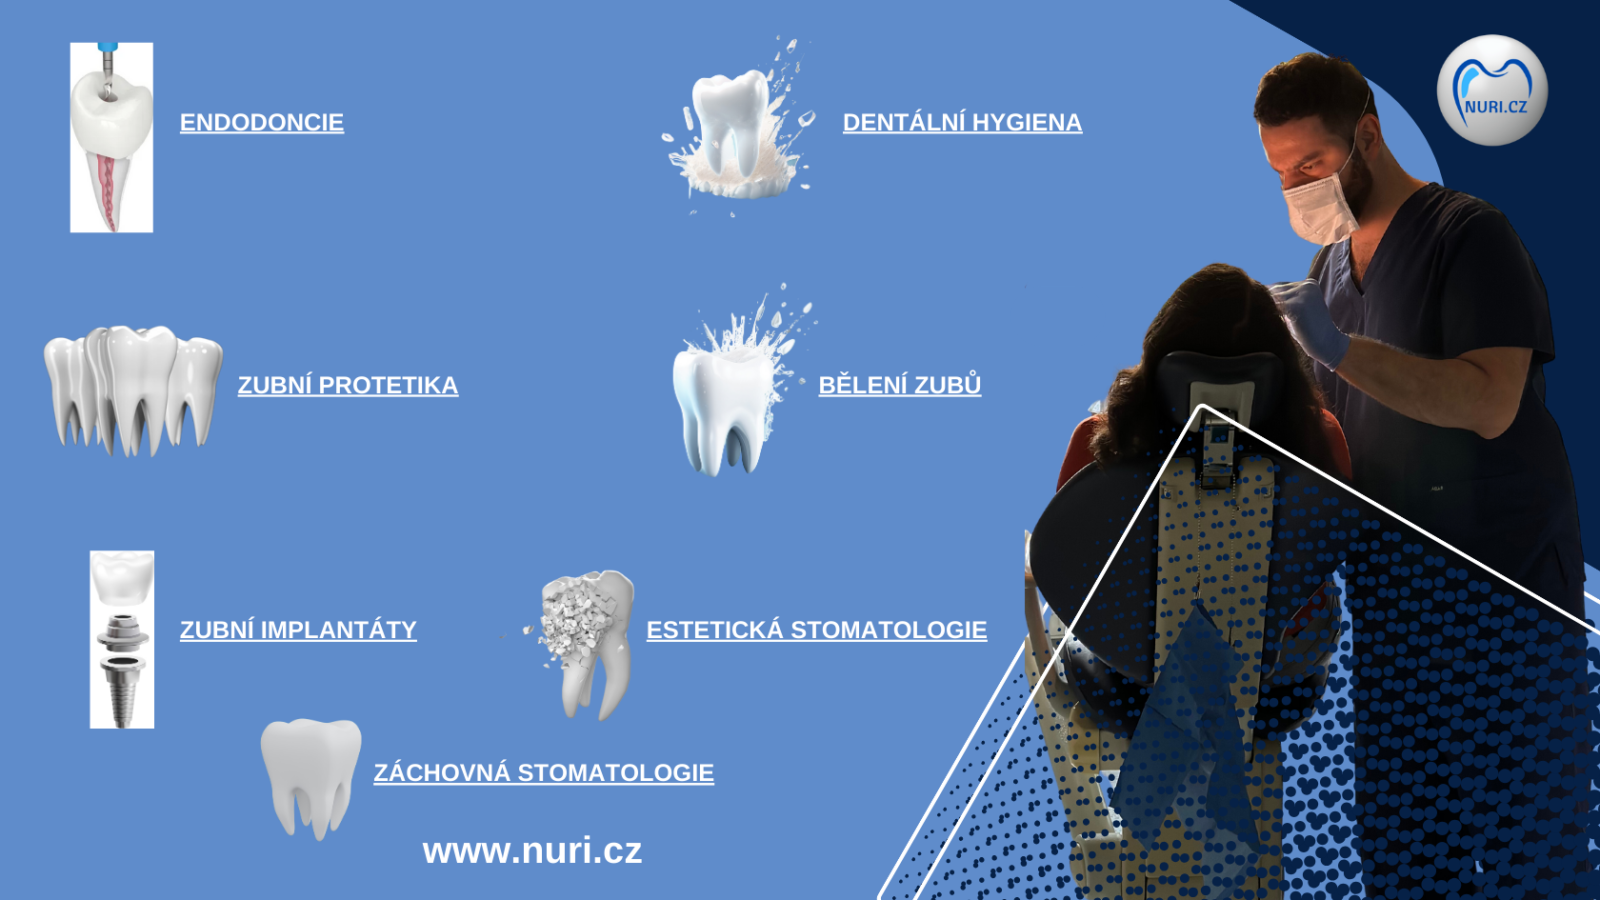 Zachovna-stomatologie-zahrnuje-prevenci-diagnostiku-a-terapii-zubniho-kazu.-Venuje-se-take-osetreni-urazu-zubu.-V-nasi-zubni-ordinaci-pouzivame-metalokeramicke-nebo-celokeramicke-korunky.-Diky-ni